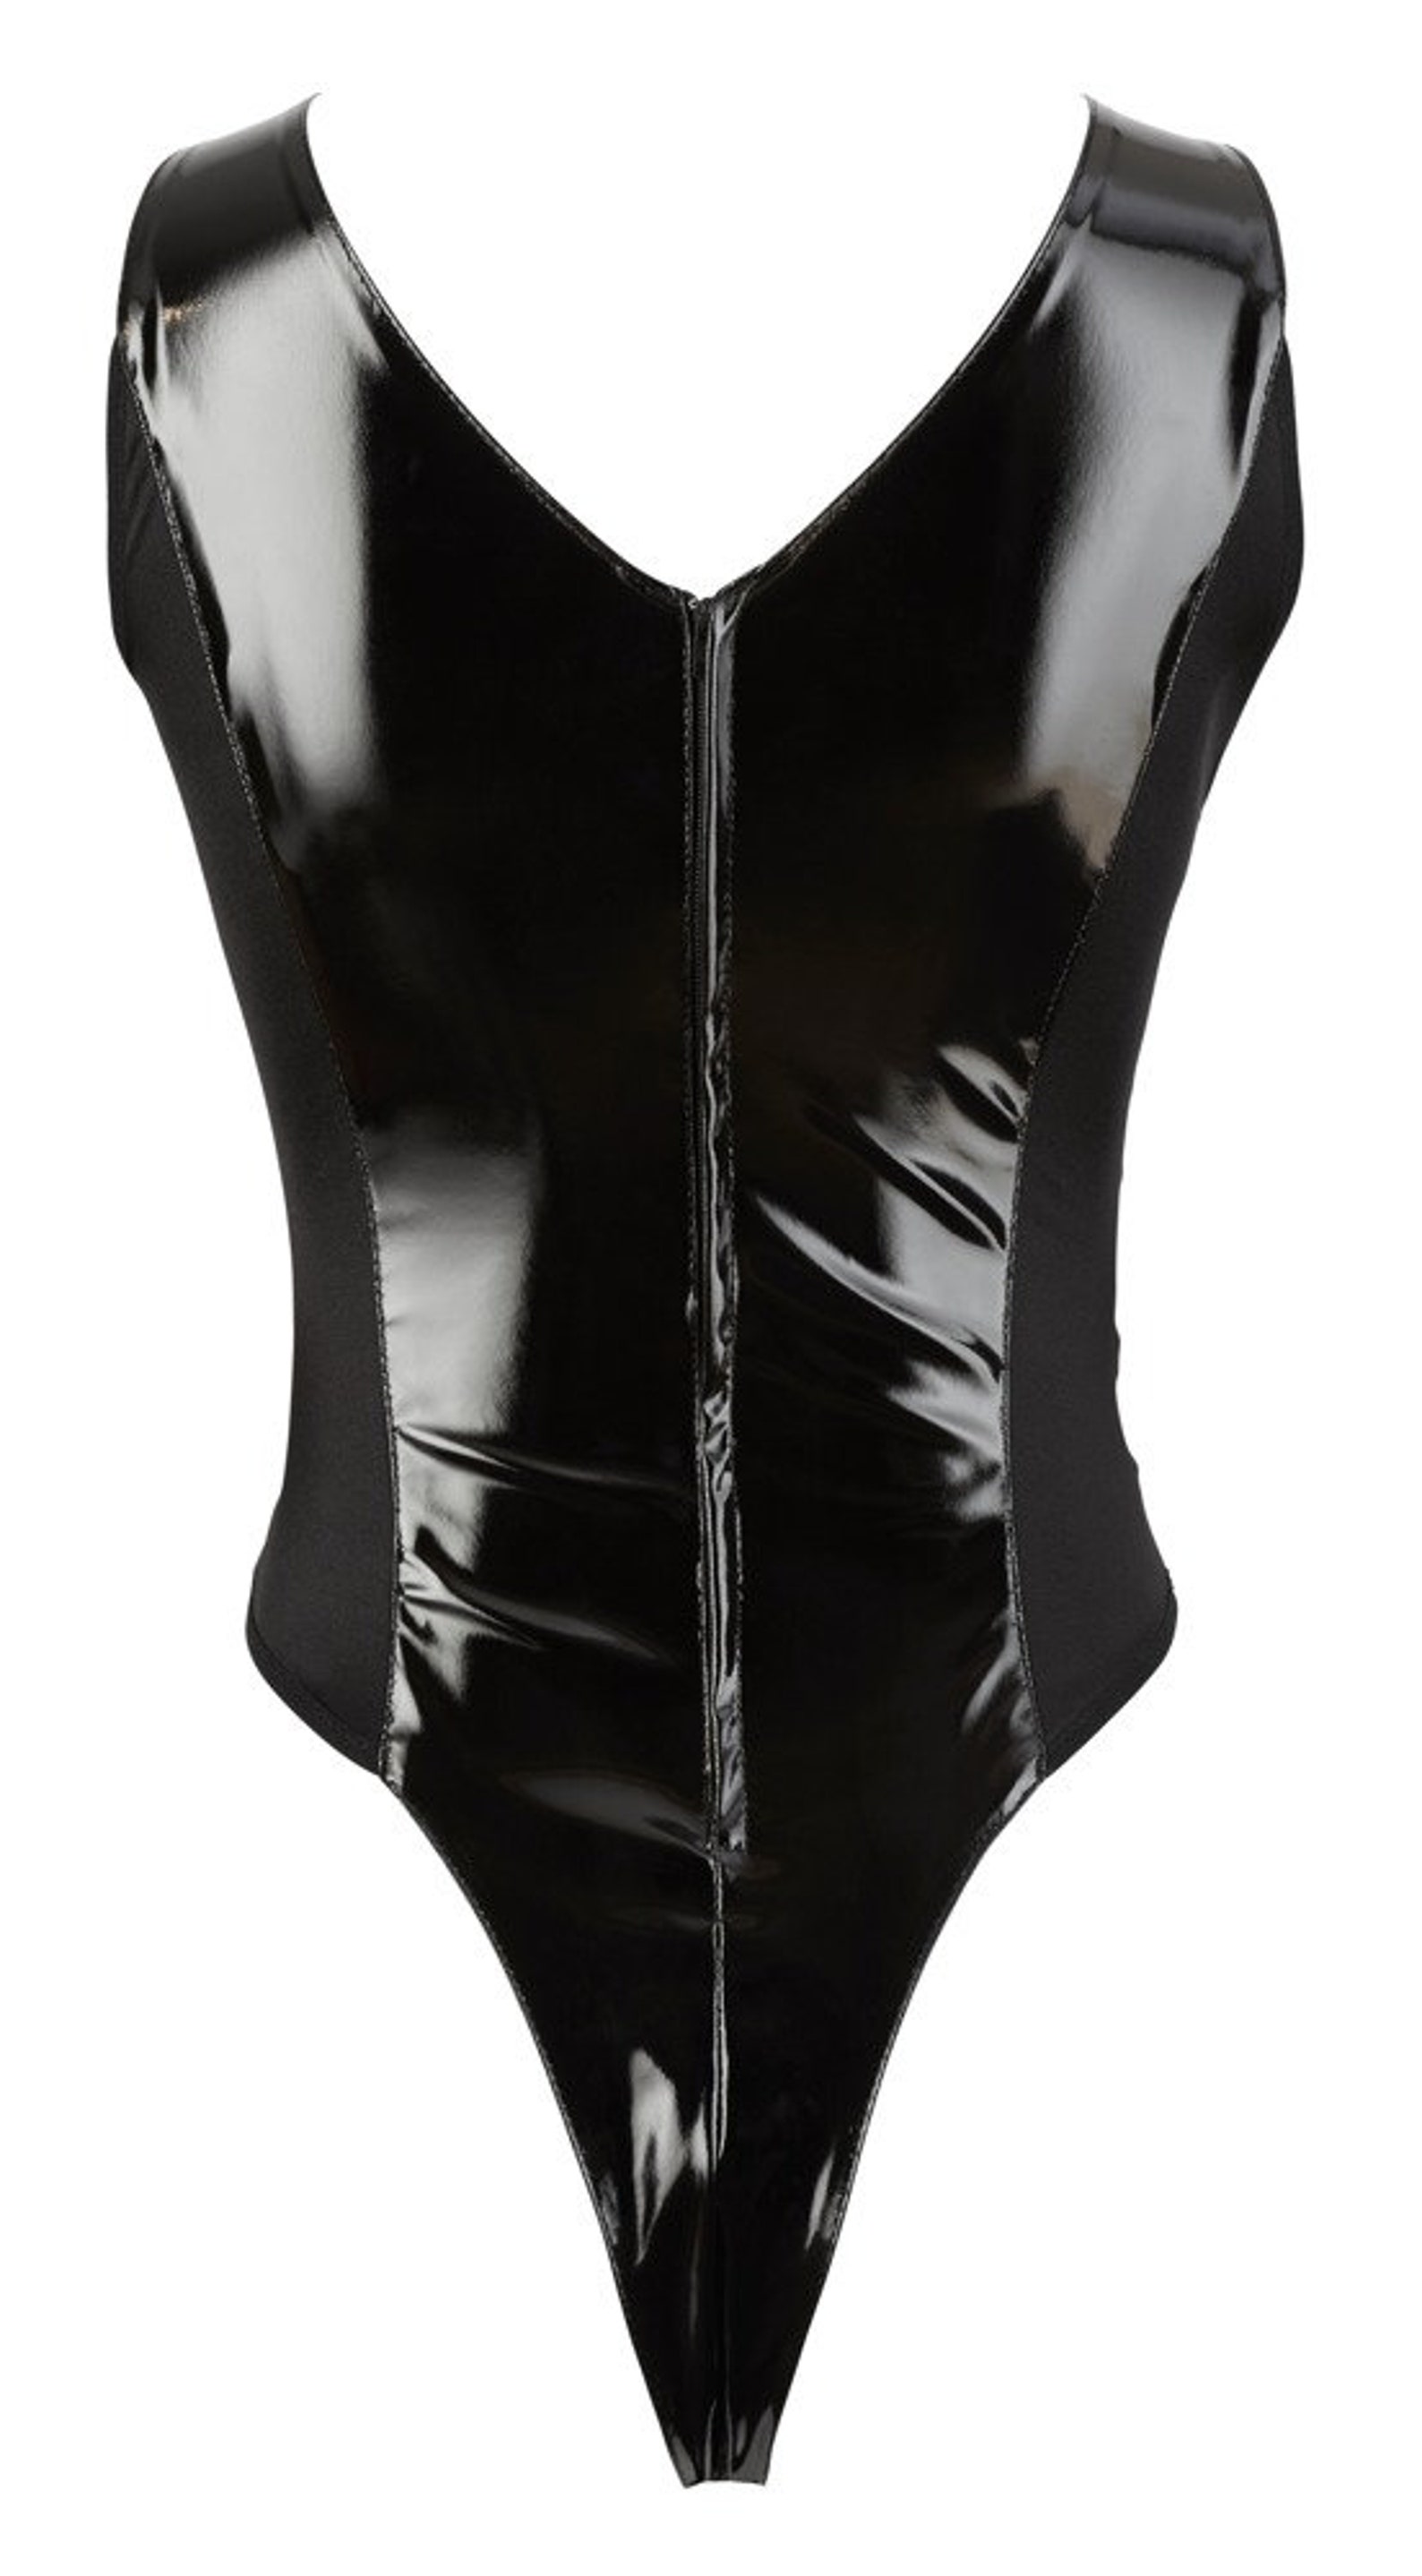 Crotchless Open Cup Vinyl Bodysuit Black Lacquer Bra - Etsy